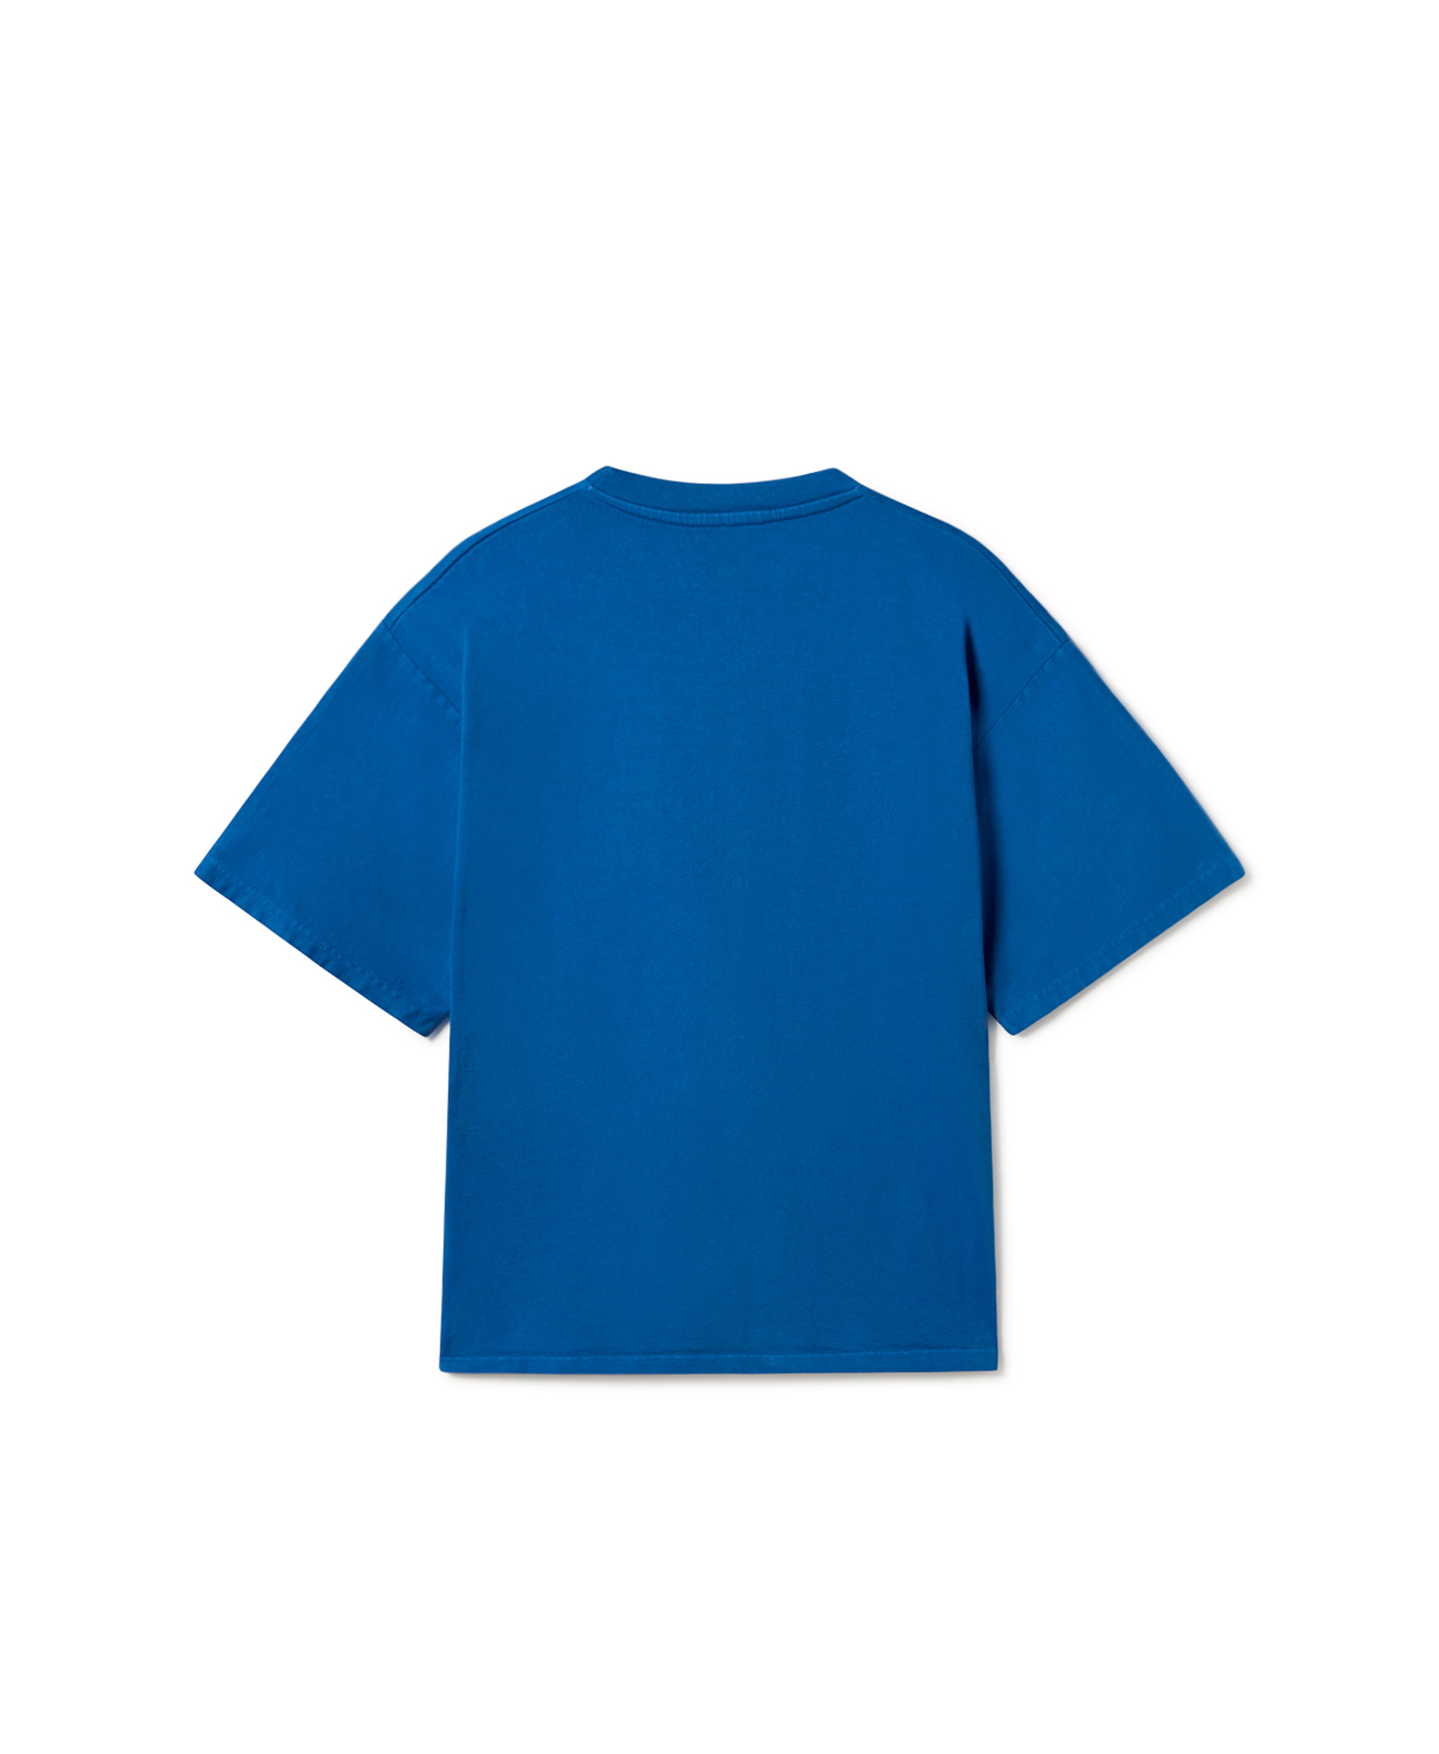 300 GSM 'Royal Blue' T-Shirt